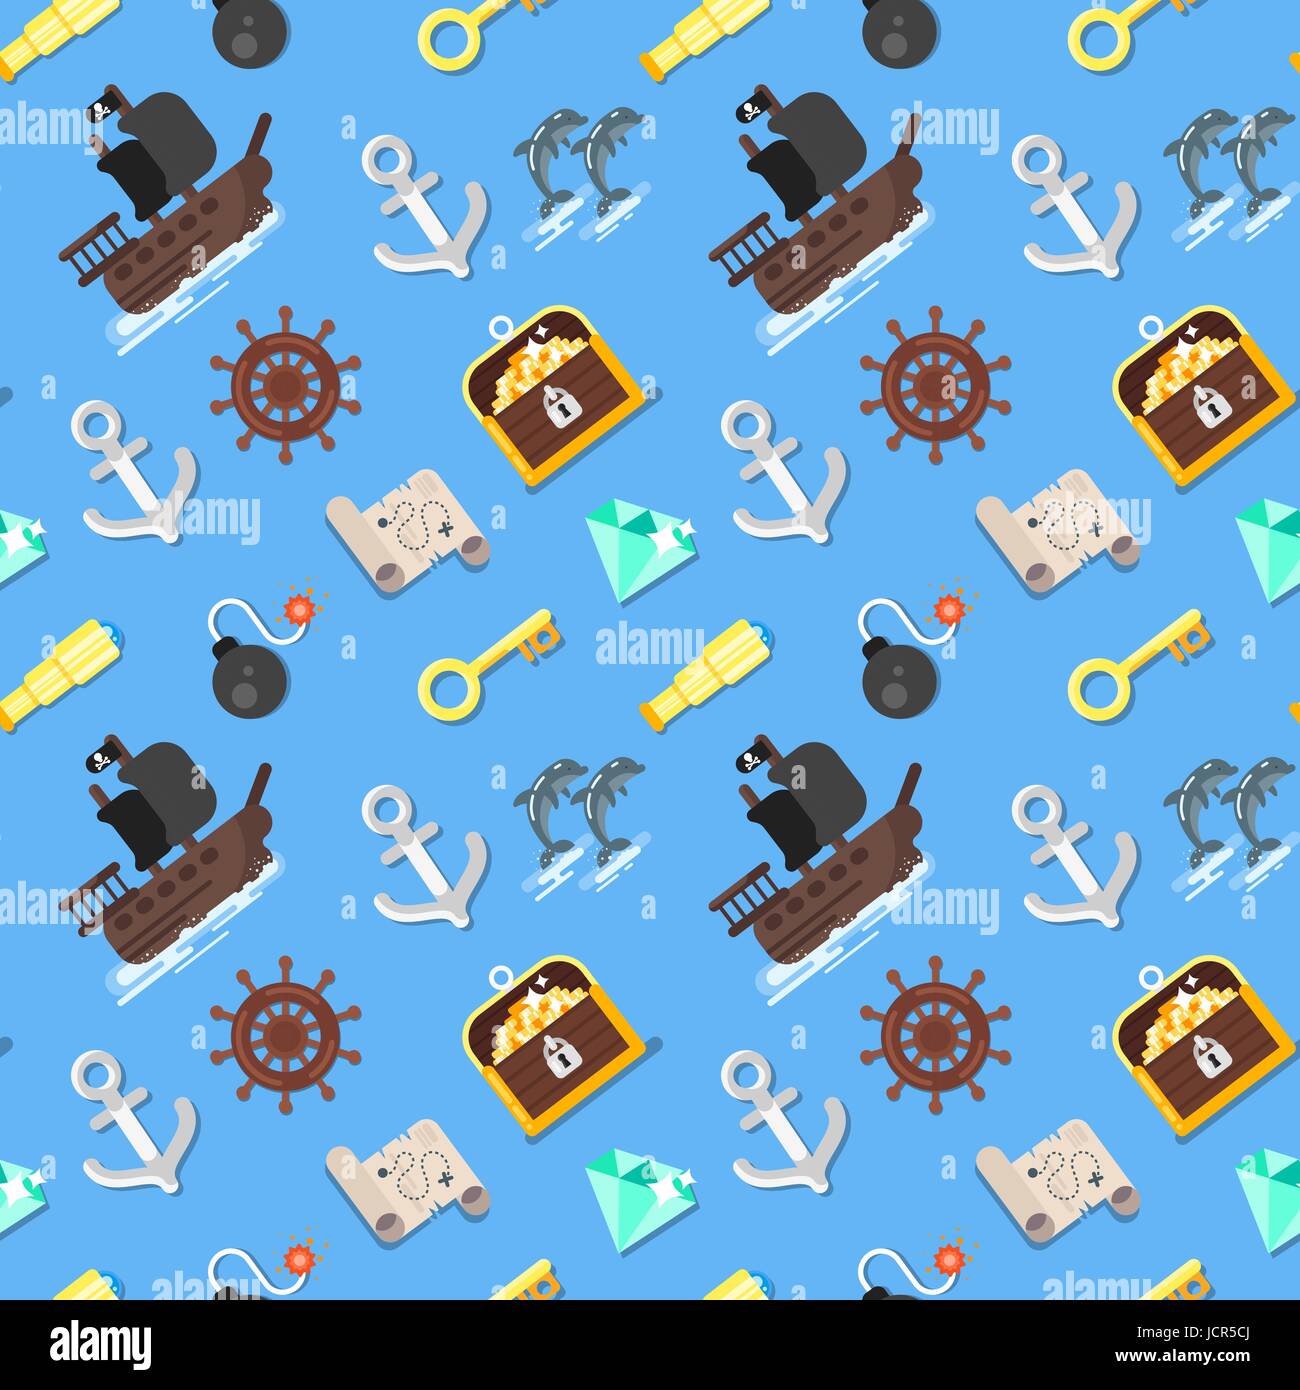 Flache nahtlose Vektormuster mit Piratenschiff, Schatztruhe, Karte und Schlüssel. Isoliert auf blauem Hintergrund. Stock Vektor